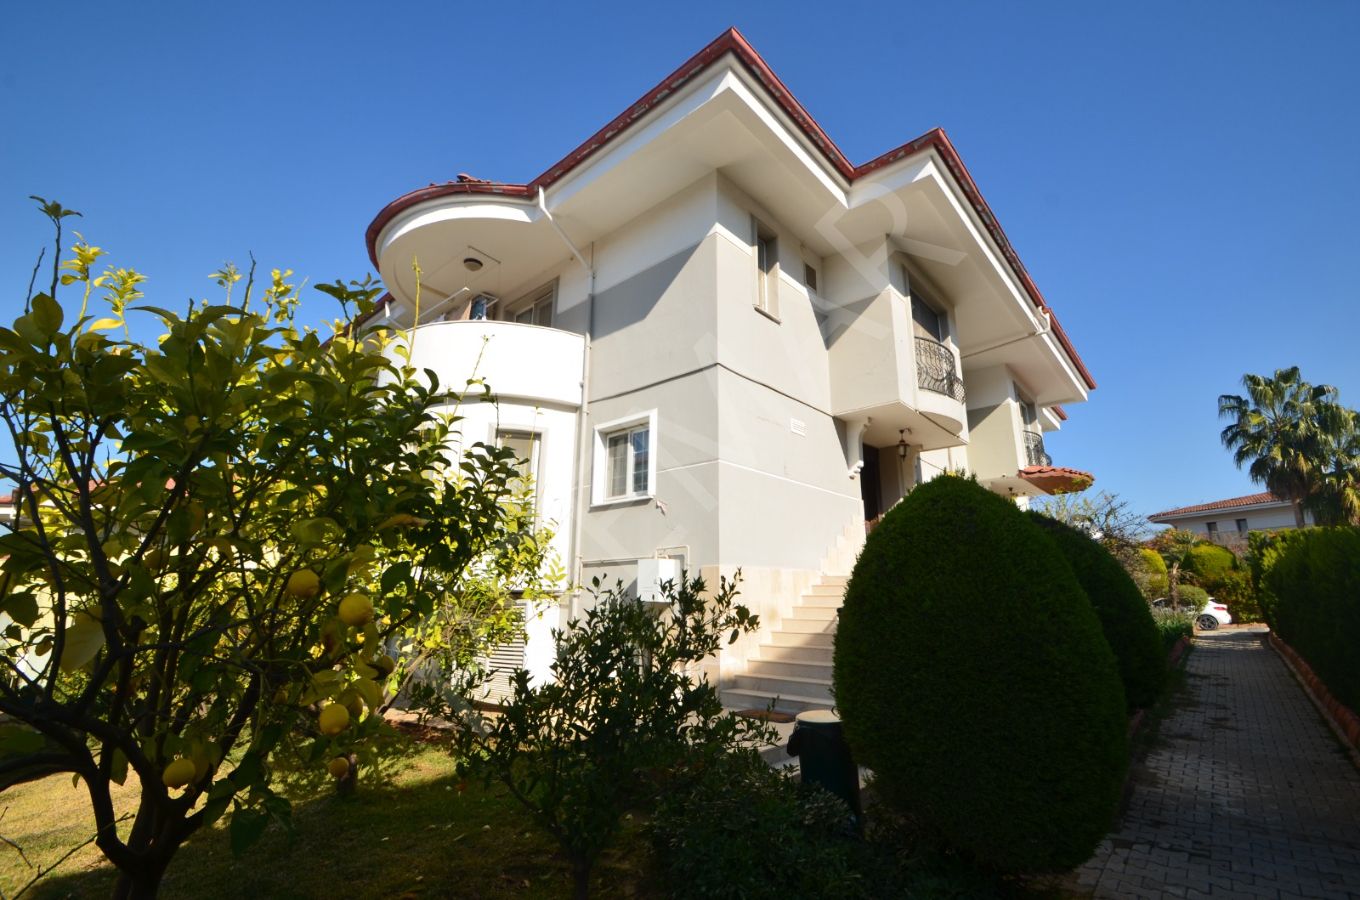 Adana Kabasakal 'da Güvenli Kaliteli Muhteşem Site İçinde Villa